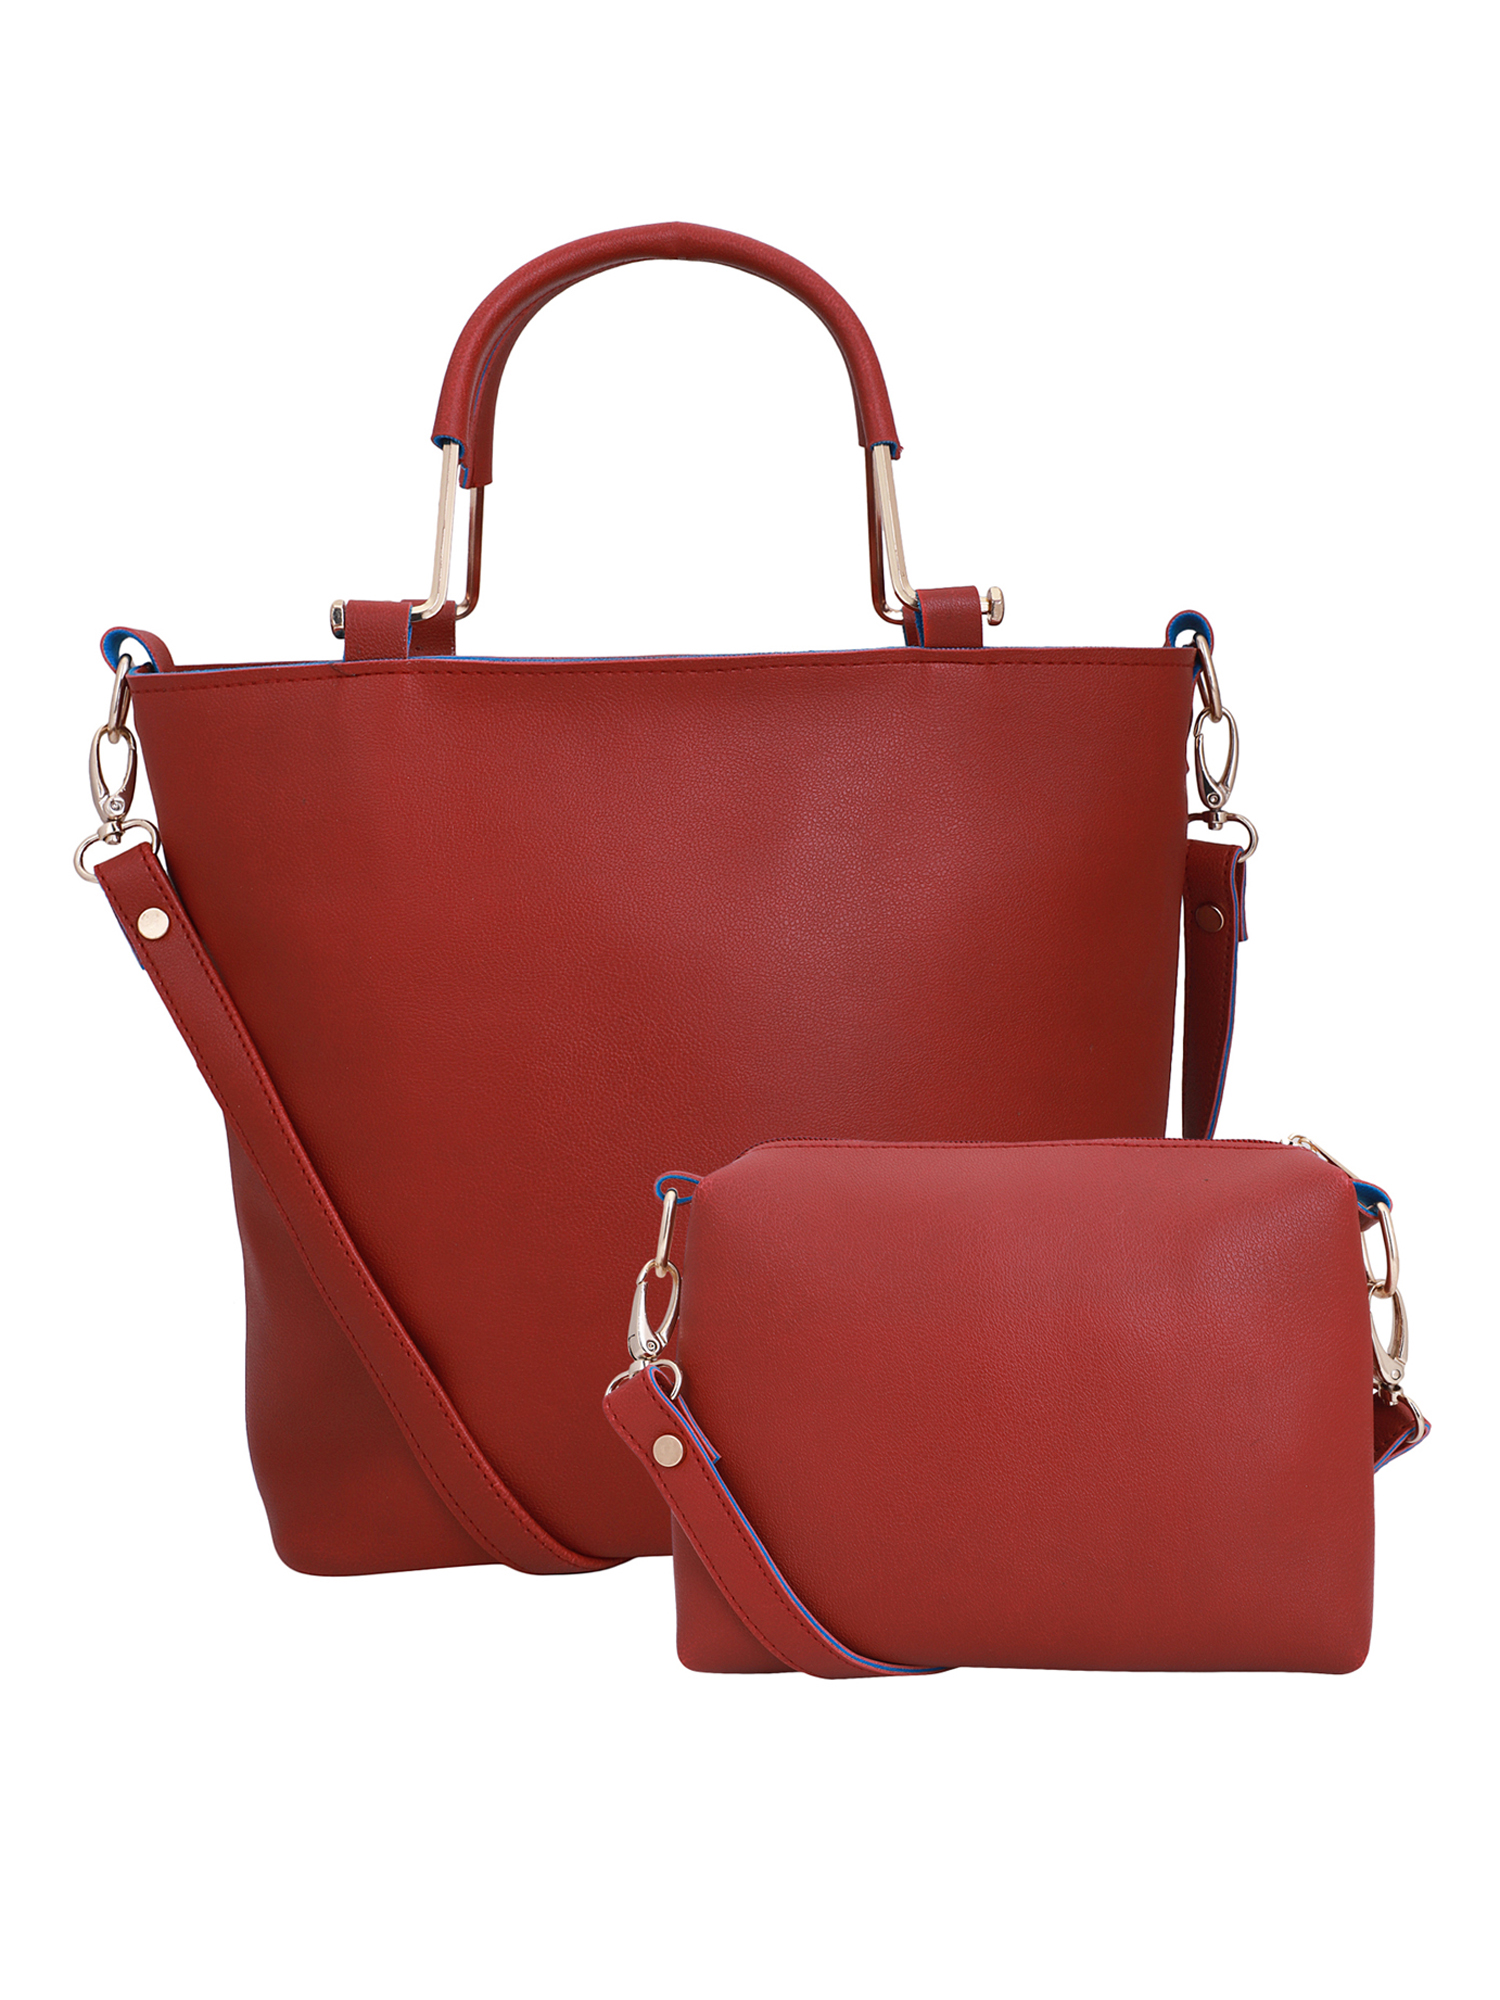 Lapis O Lupo WomenS Handbag And Sling Bag Combo Red Set Of 2